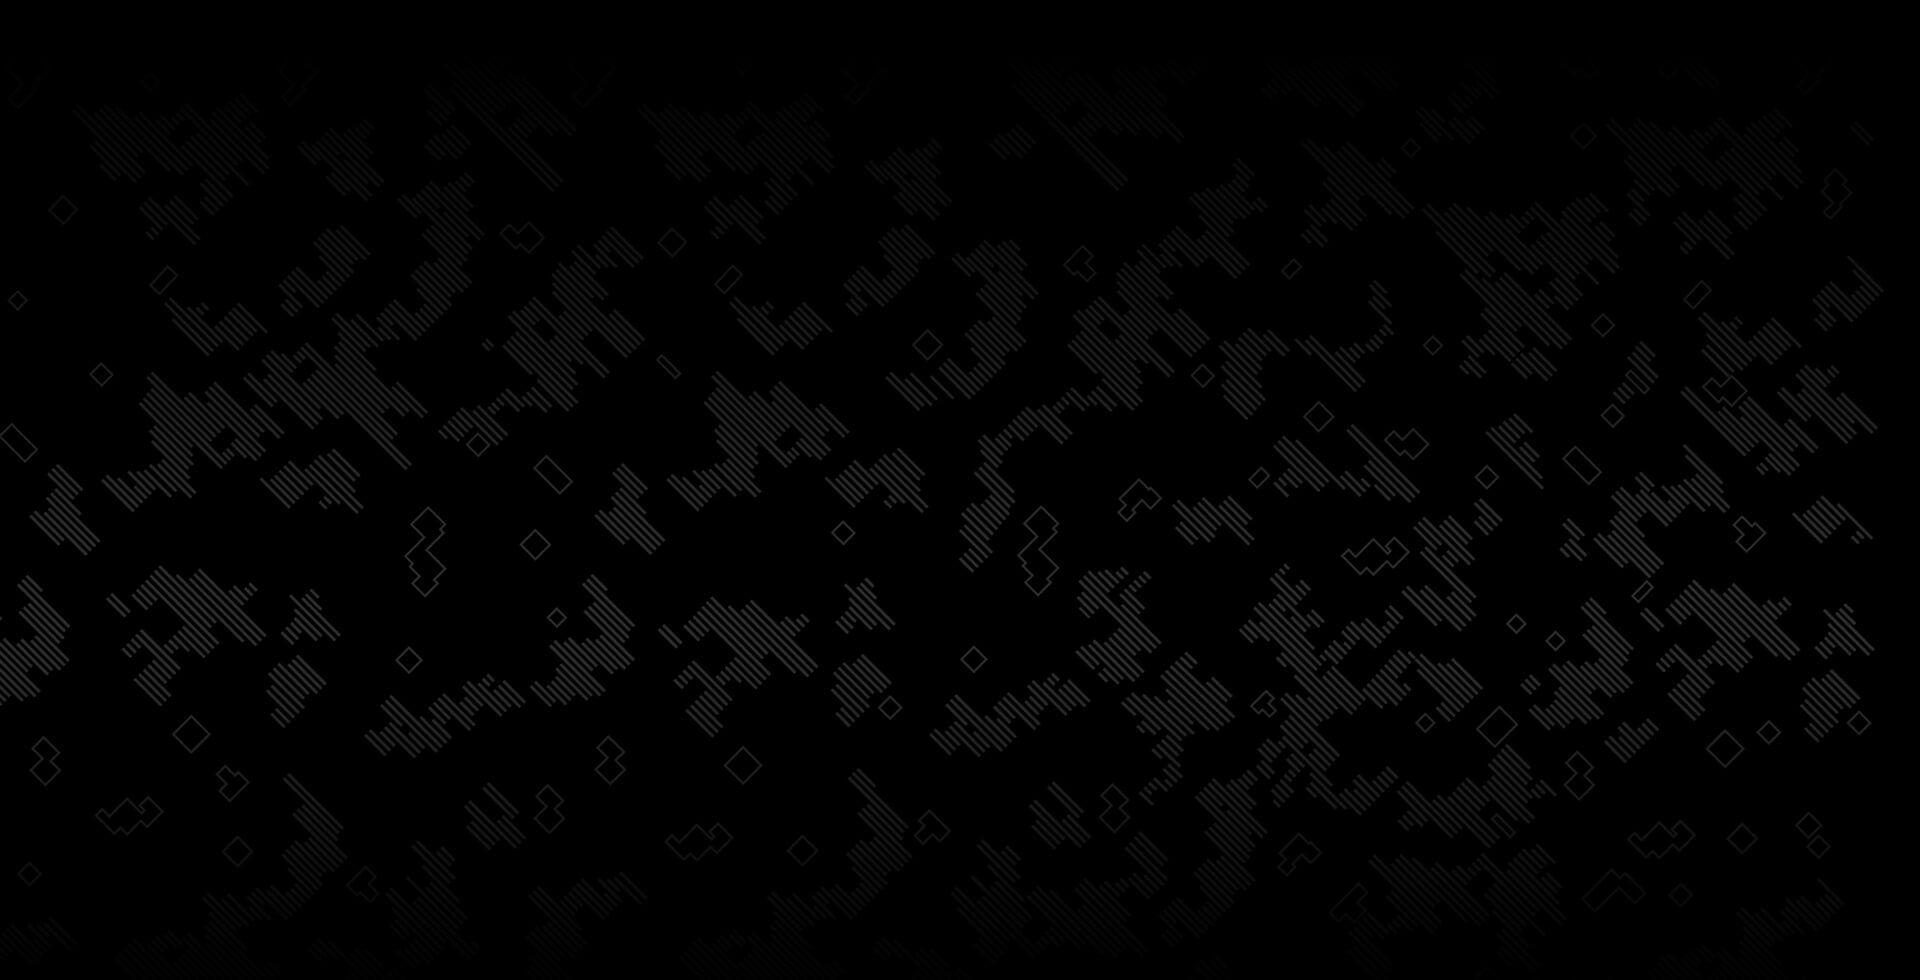 wallpaper tuf gaming: Những hình nền liên quan đến TUF Gaming sẽ mang đến cho bạn cảm giác sống động, mạnh mẽ và đầy ấn tượng cho máy tính của bạn. Hãy cùng khám phá và tải về những wallpaper TUF Gaming đẹp mắt, thay đổi giao diện máy tính của bạn ngay thôi!